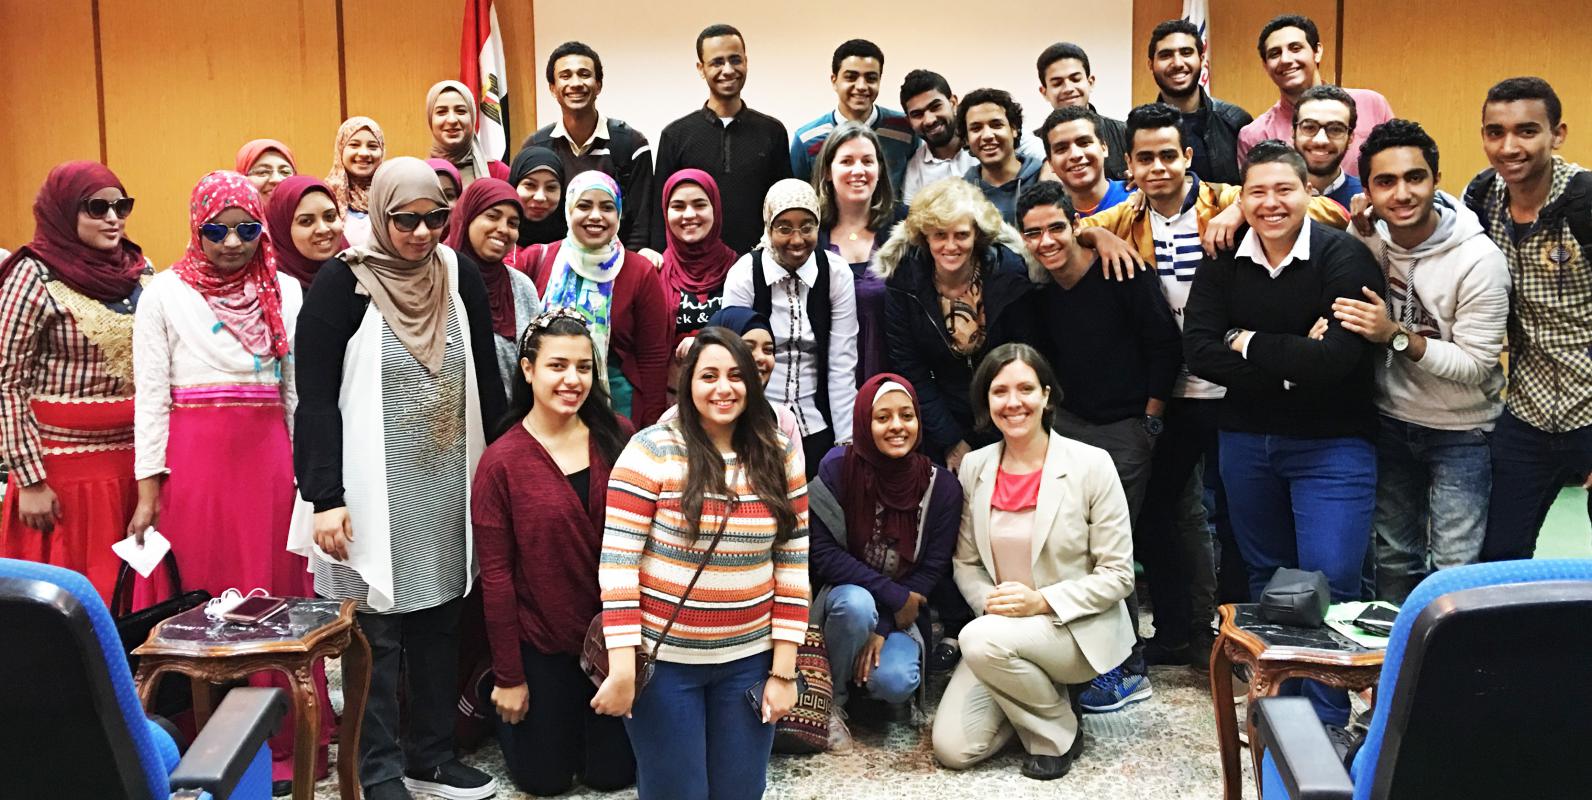 مجموعة كبيرة من طلاب الجامعات المصريين يتجمهرون معًا ويبتسمون أمام الكاميرا